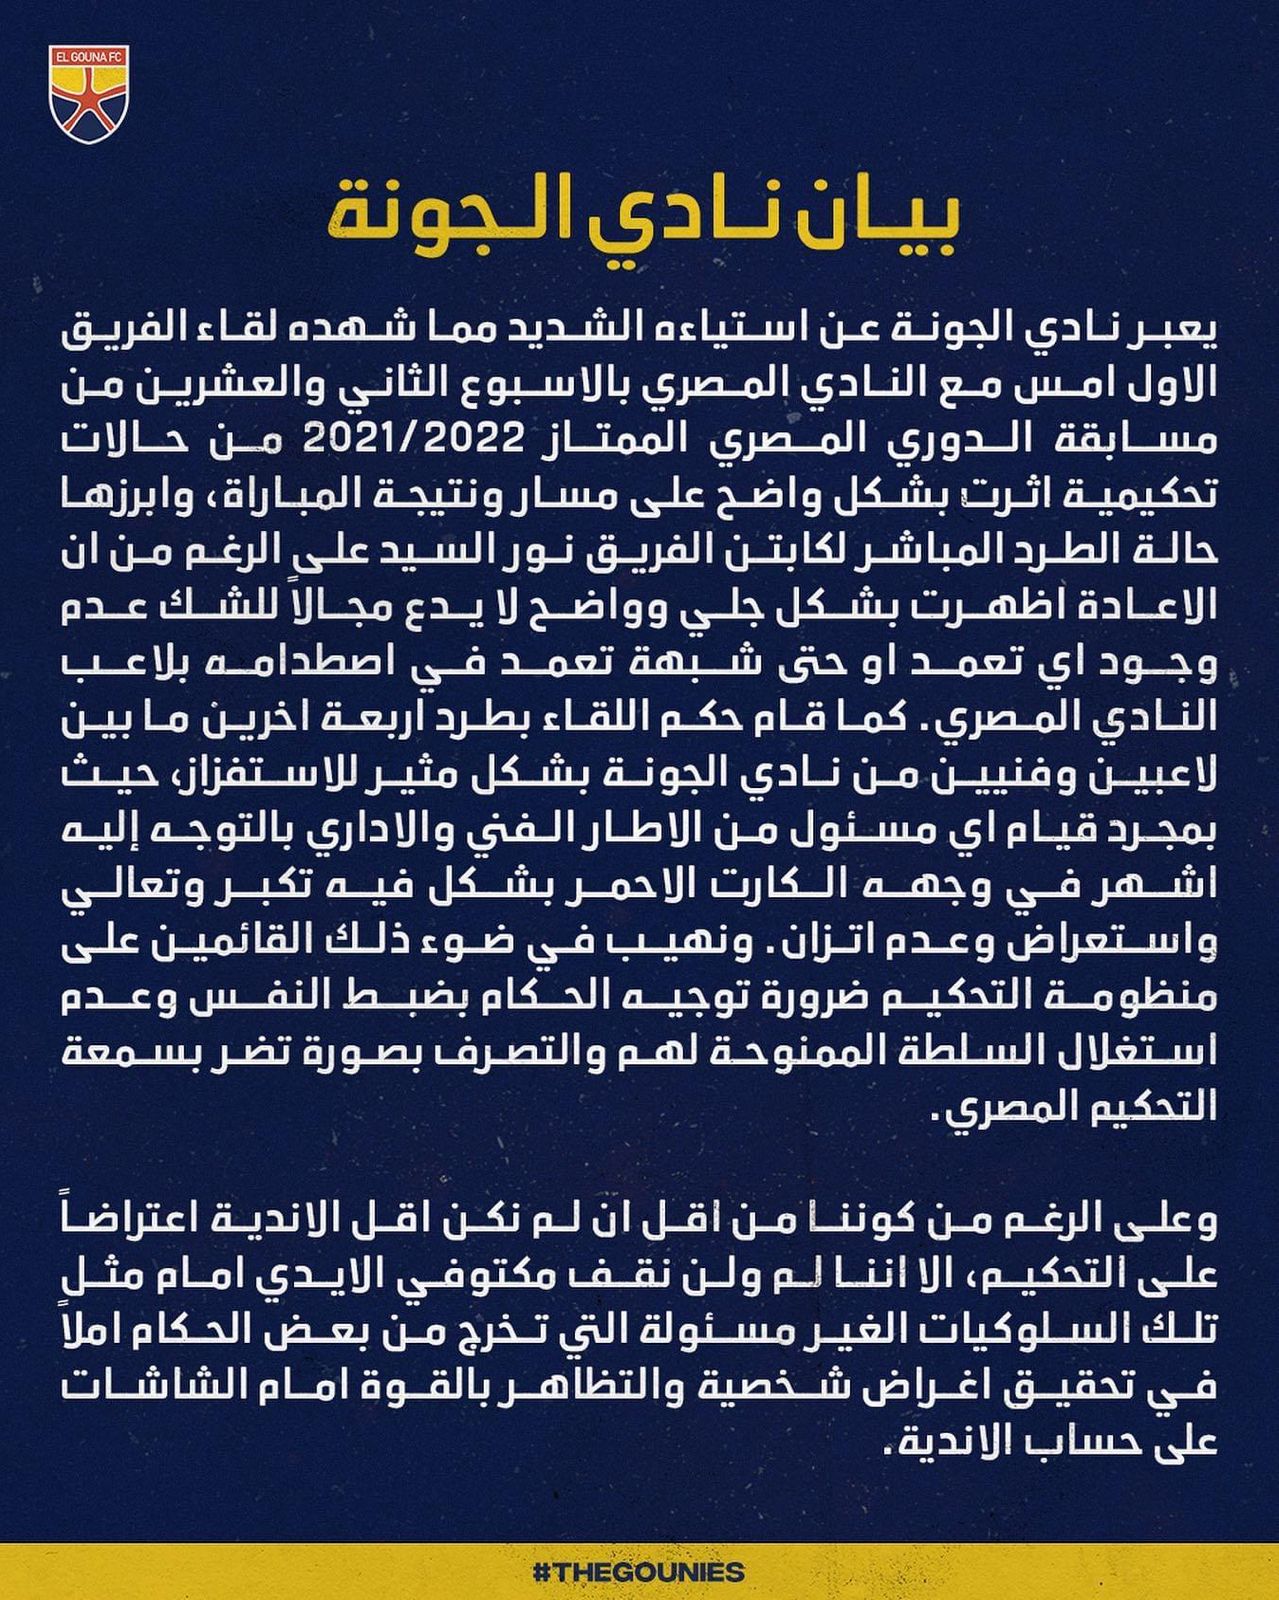 الجونة يصدر بيانا رسميا بشأن الأخطاء التحكيمية في لقاء المصري 1